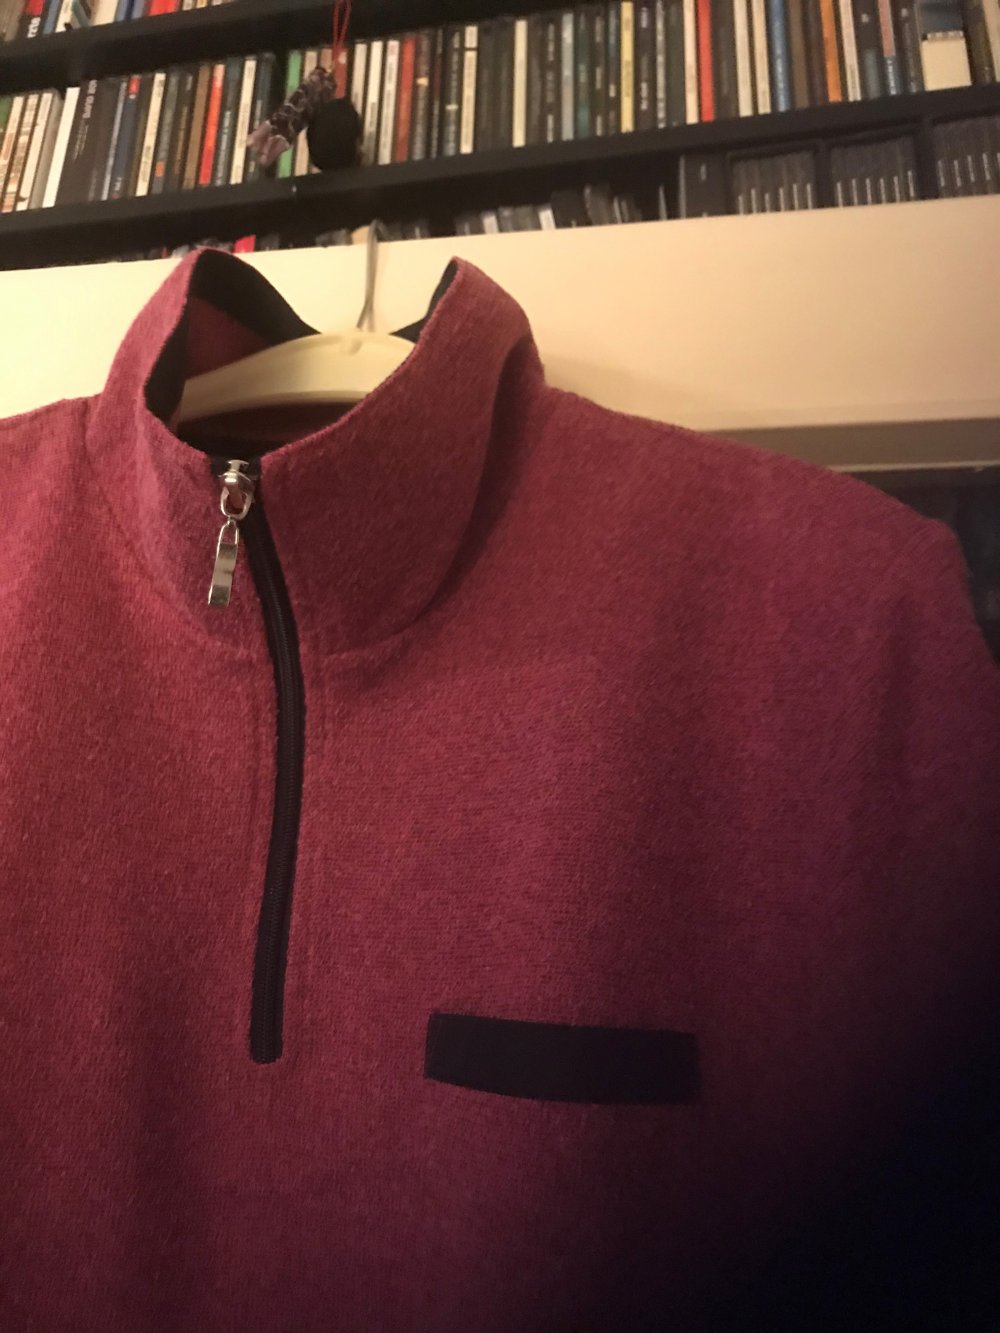 Pullover dunkelrosa/himbeerfarben Größe 48 – selten getragen